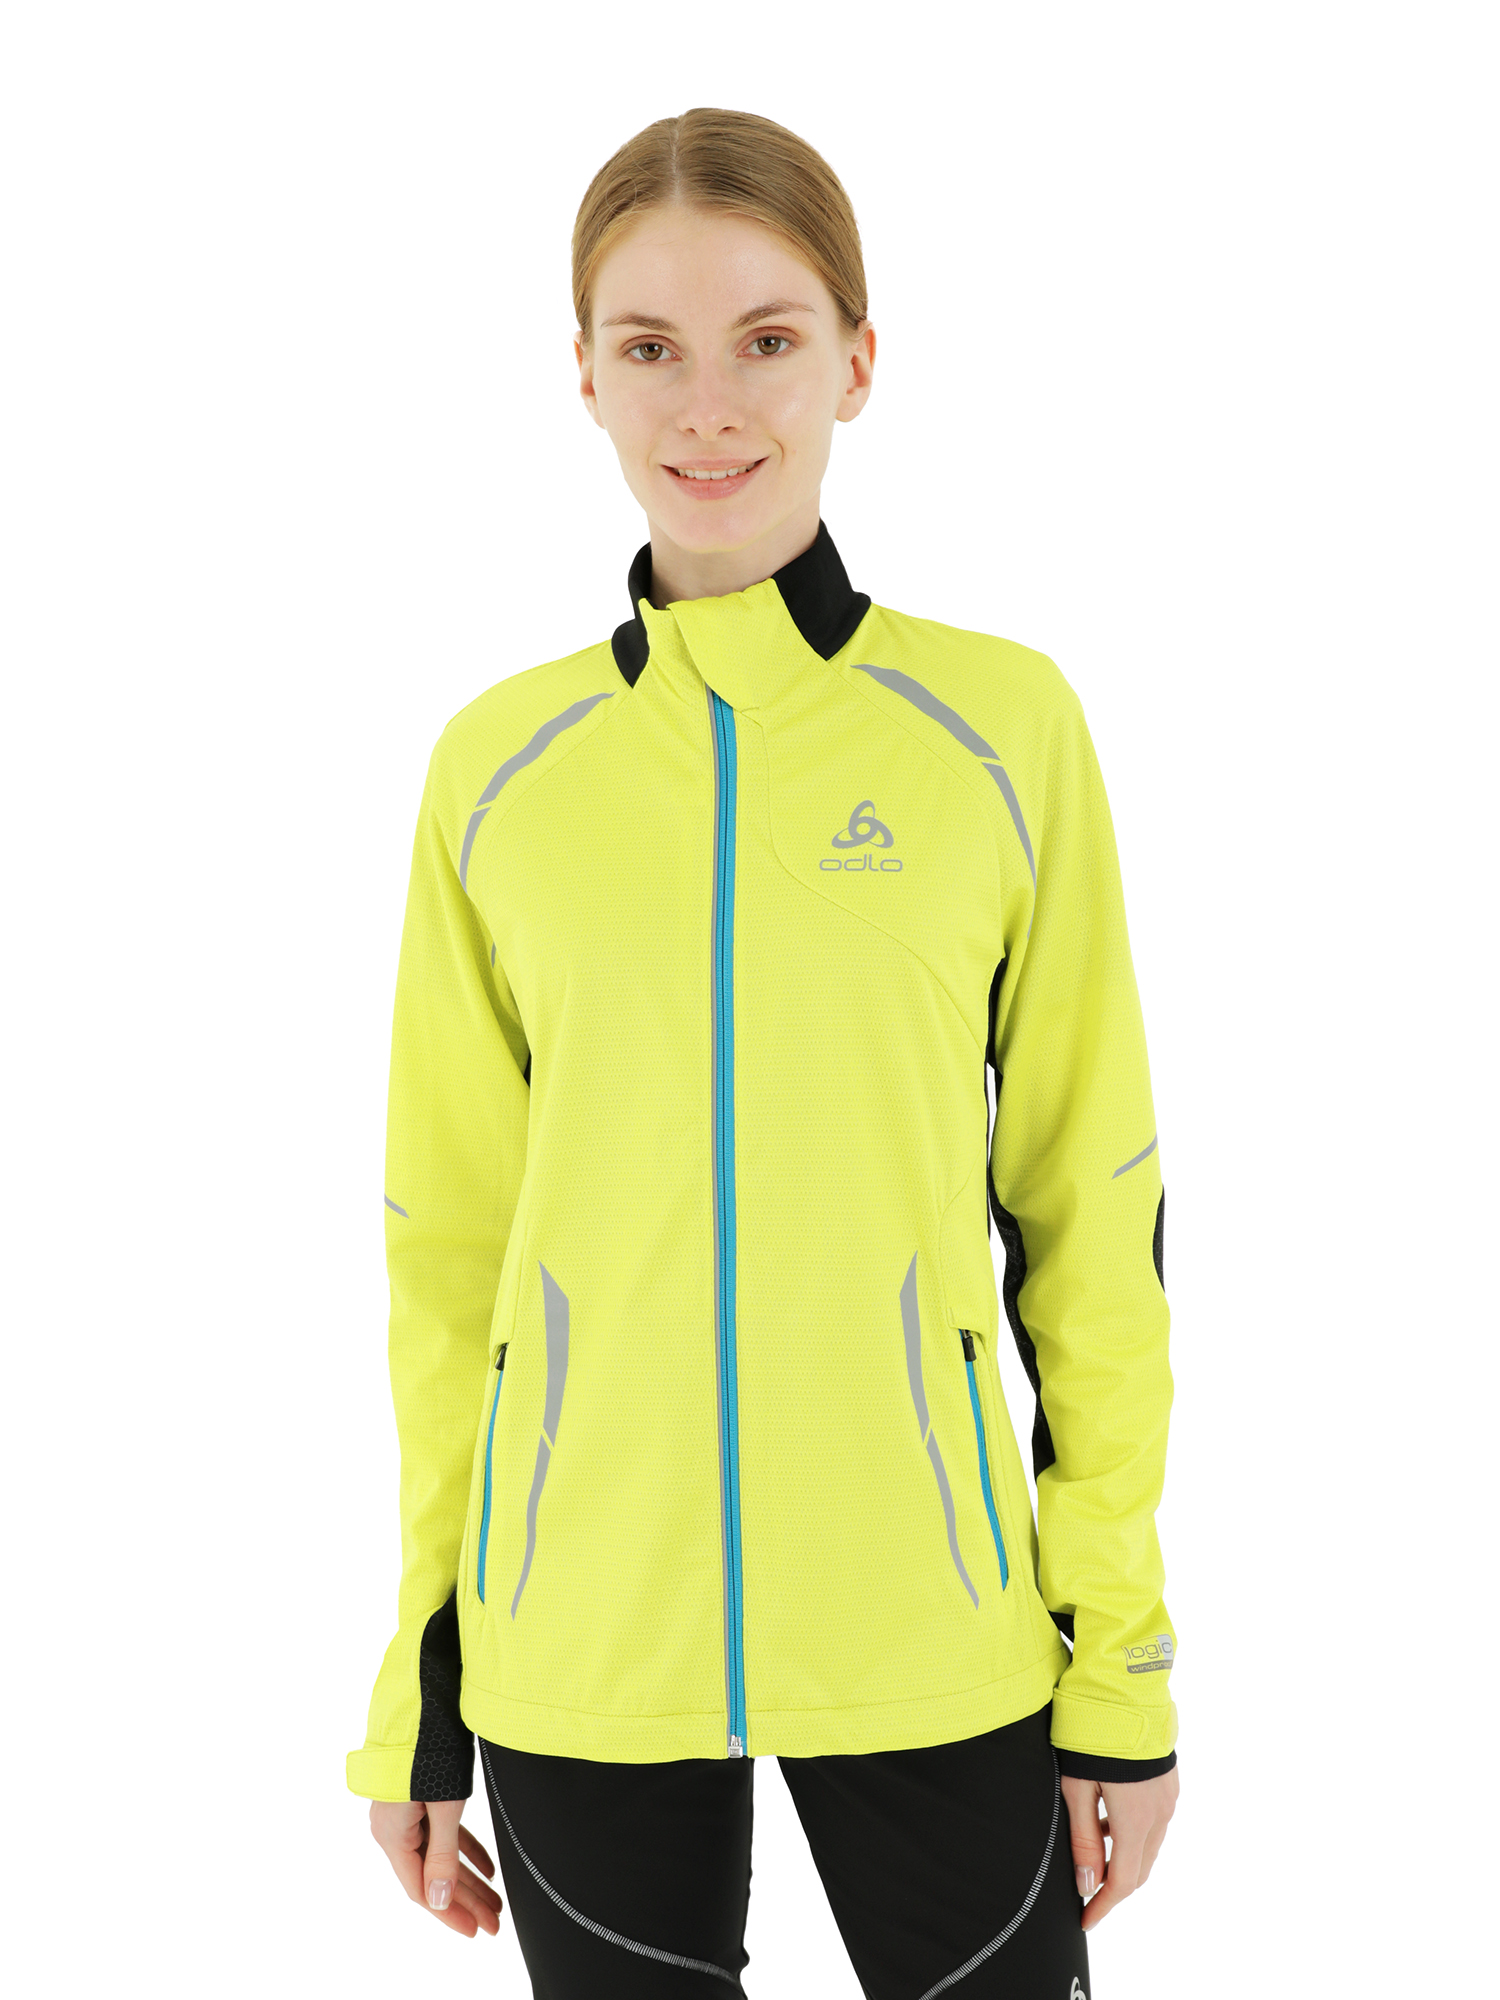 фото Спортивная куртка женская odlo jacket frequency желтая m